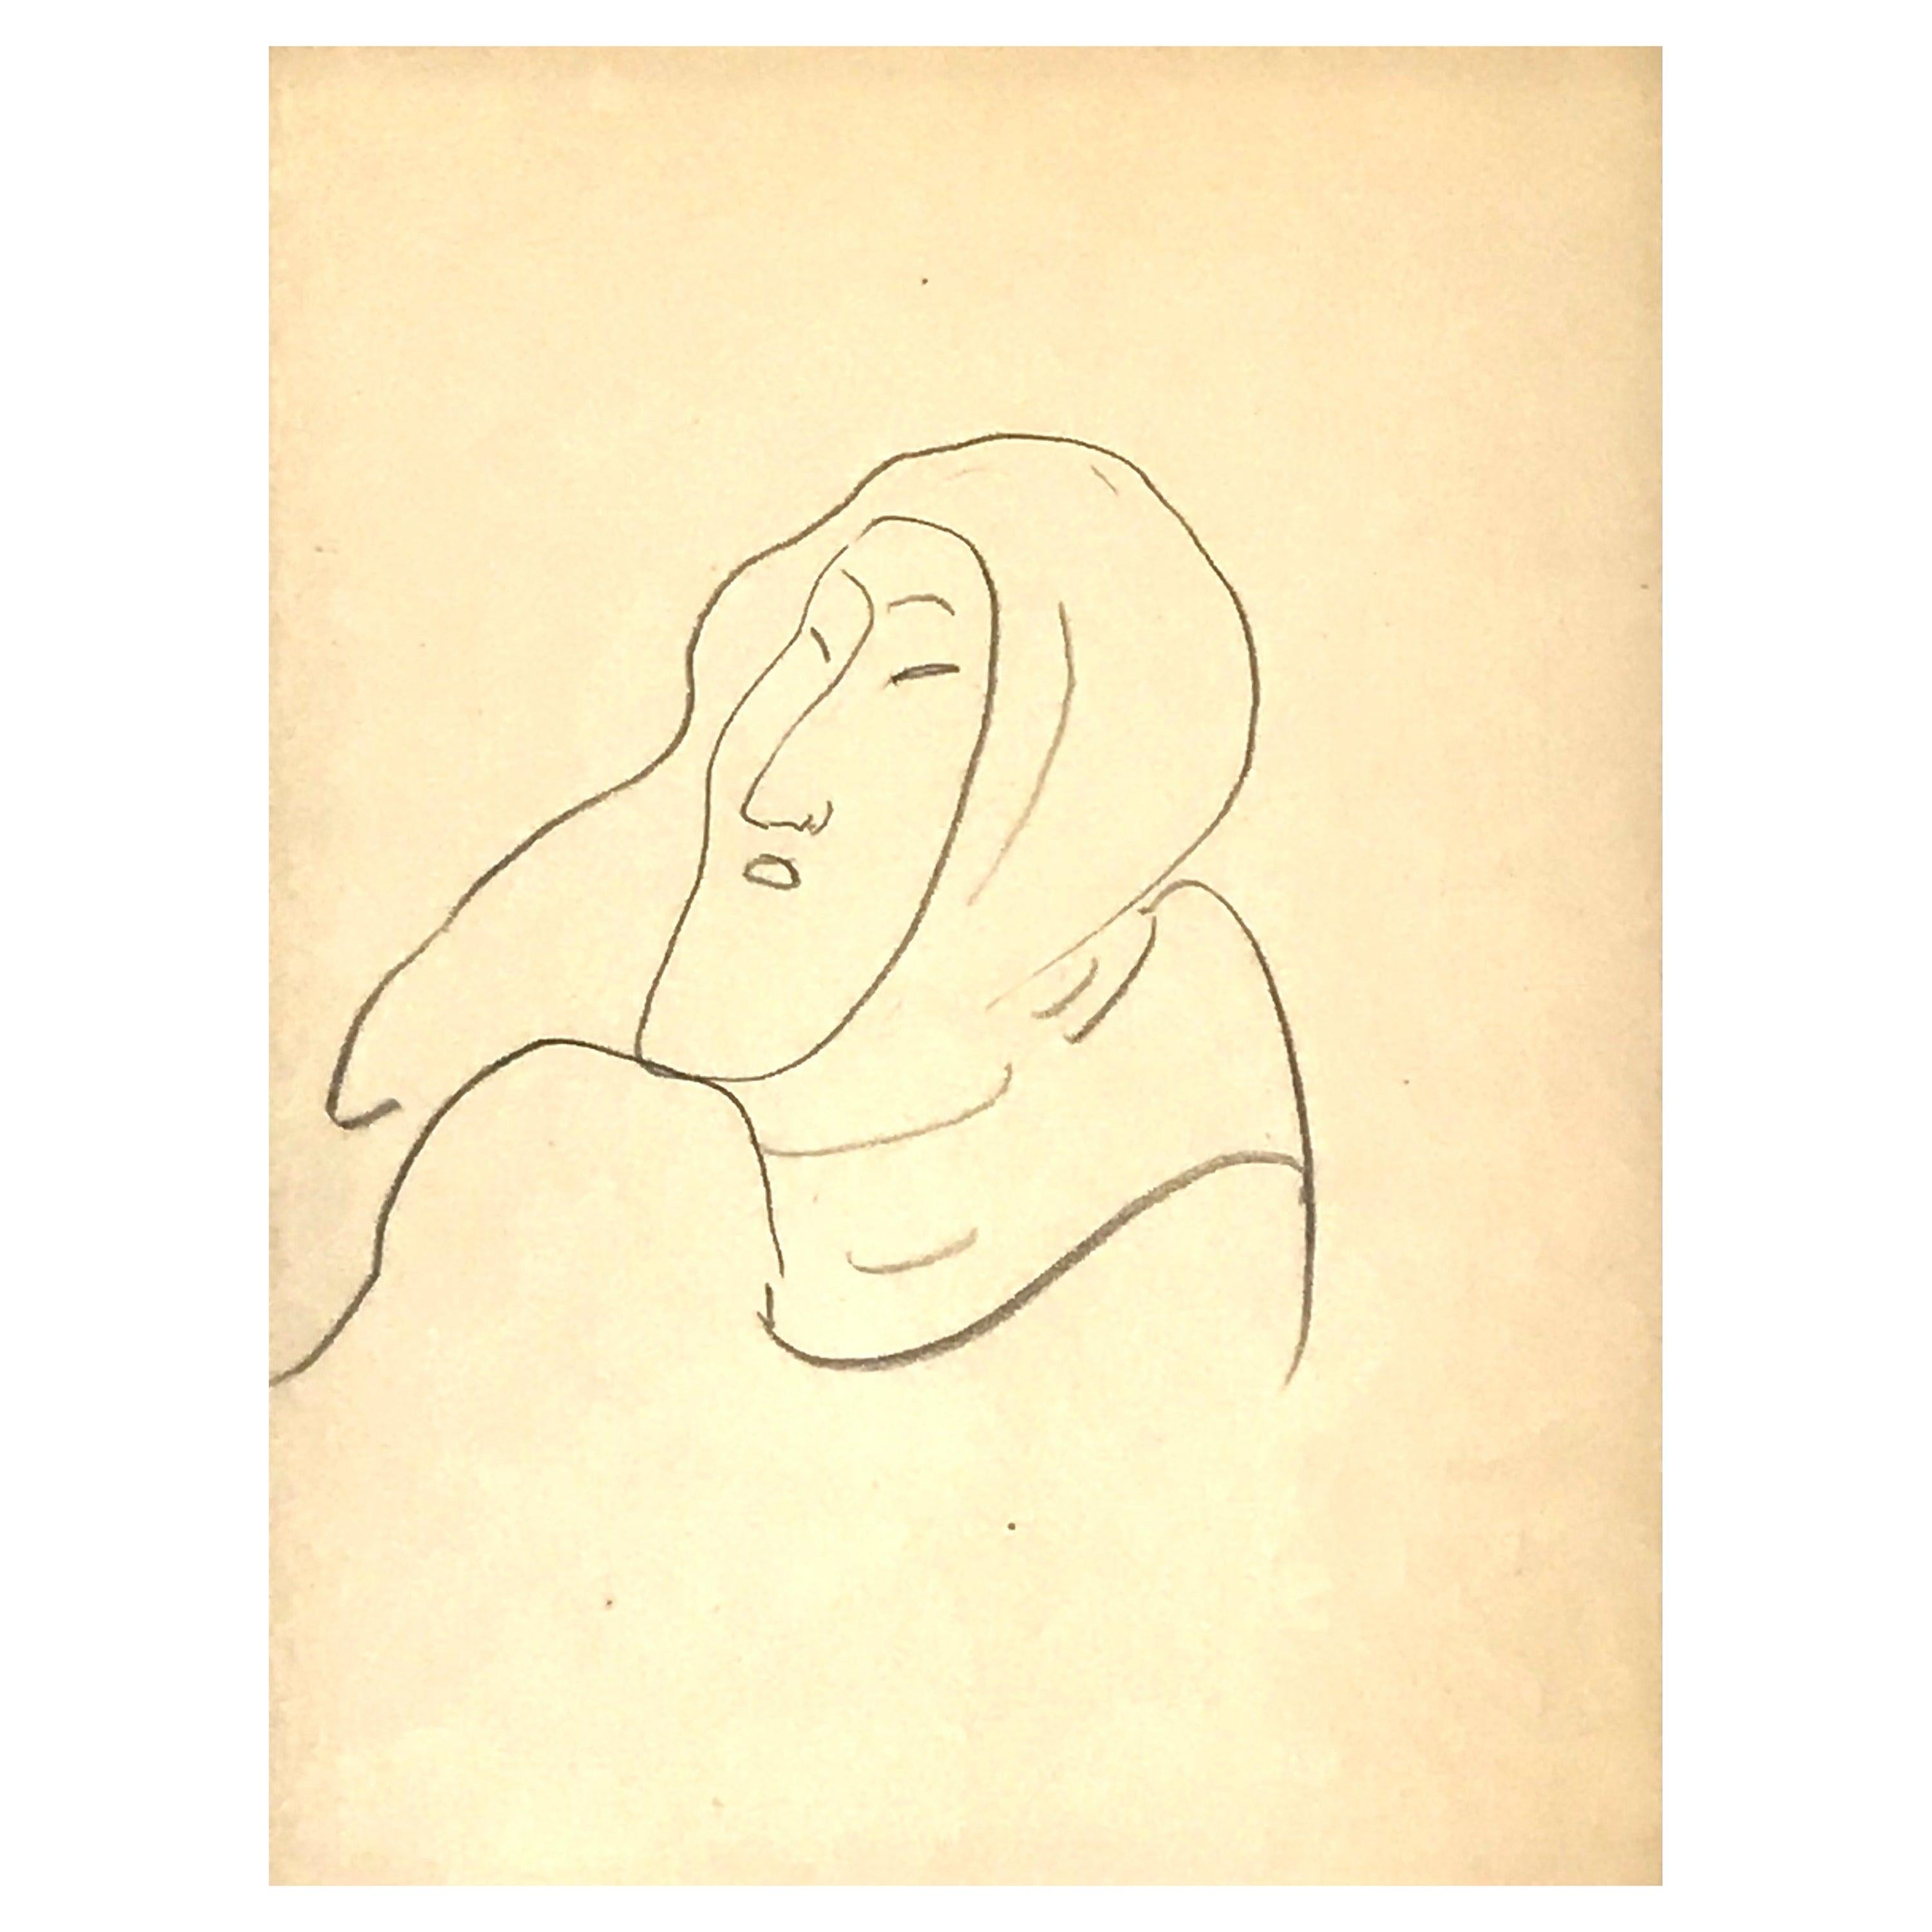 Henri Matisse Zeichnung eines Eskimo COA Von George Matisse.
Bleistift auf Papier, 1949, 
Nicht signiert.
Blattgröße: 11,75 Zoll x 9,2 Zoll
Gerahmt in Museumsrahmen mit Leinenpassepartout und Museumsglas
Rahmengröße: 24,5 x 22 Zoll

Anmerkung: Diese